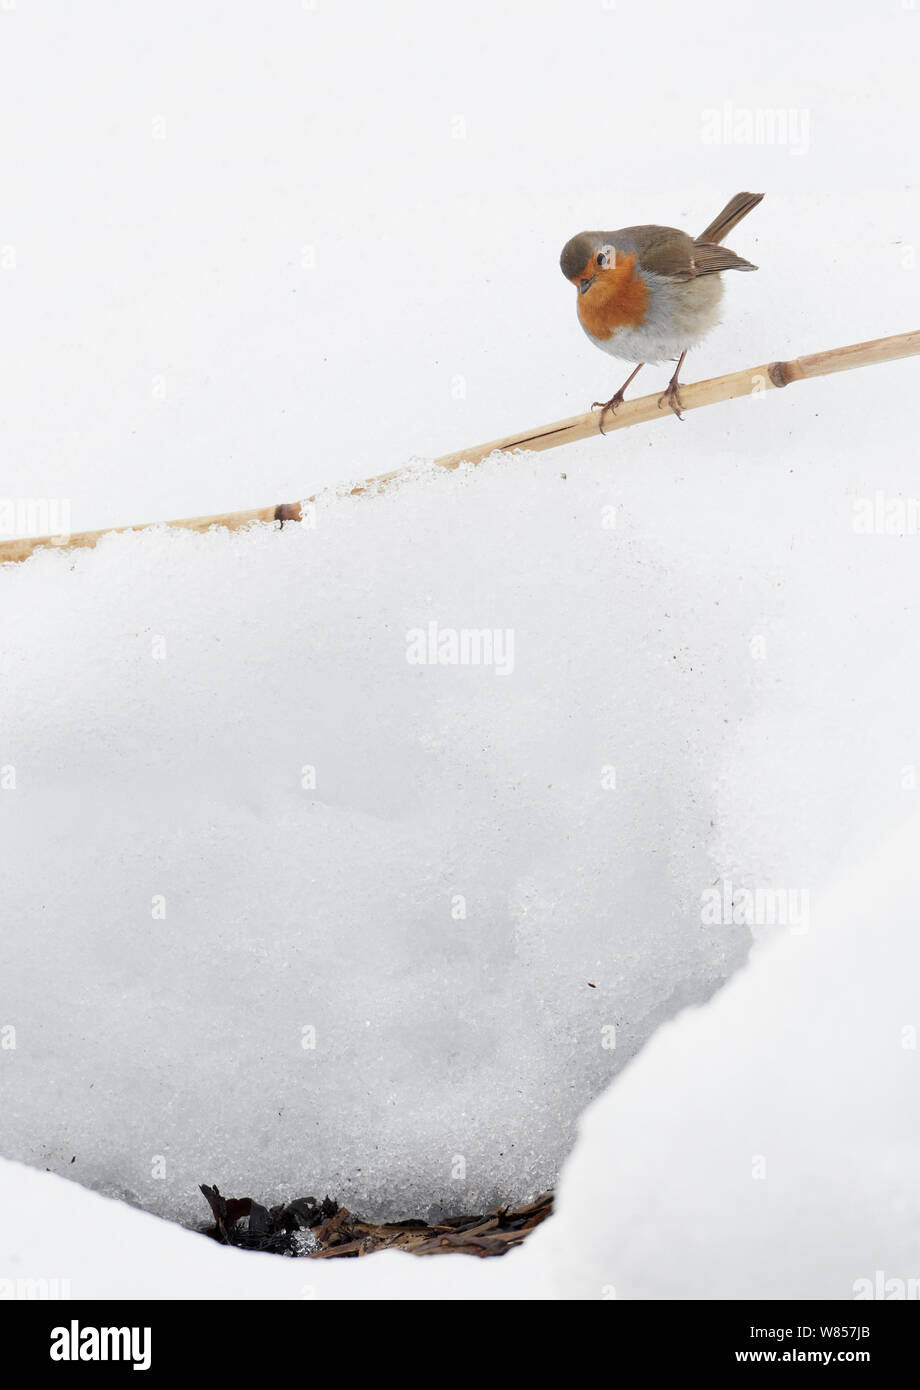 Robin (Erithacus rubecula aux abords) perché sur canne de bambou dans la neige, l'OTU, Finlande, Avril Banque D'Images